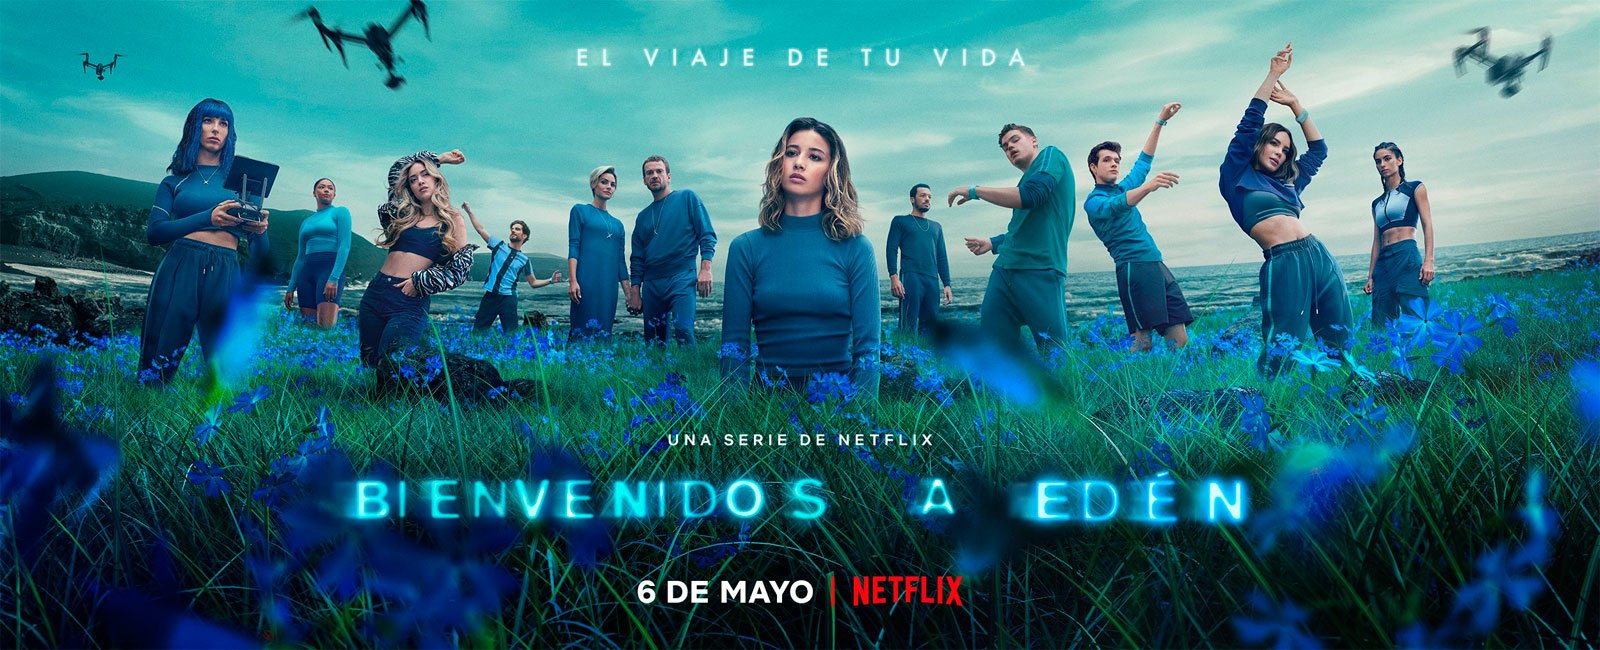 [心得] 神秘伊甸 Bienvenidos a Edén (雷) Netflix 西班牙反烏劇